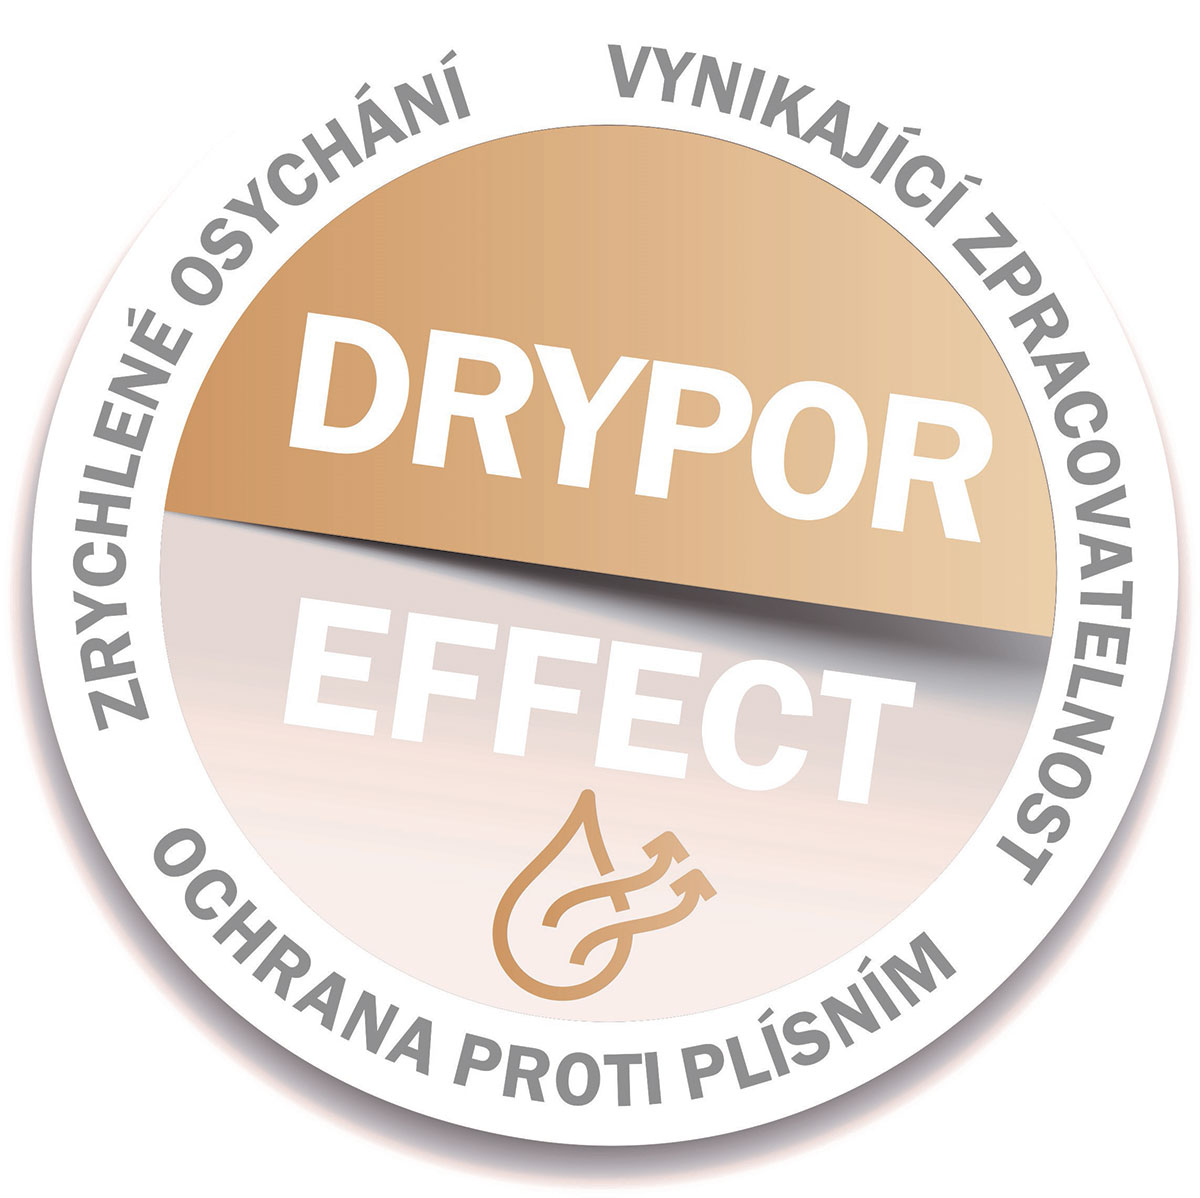 Obr. 11 – Infografika Drypor efekt